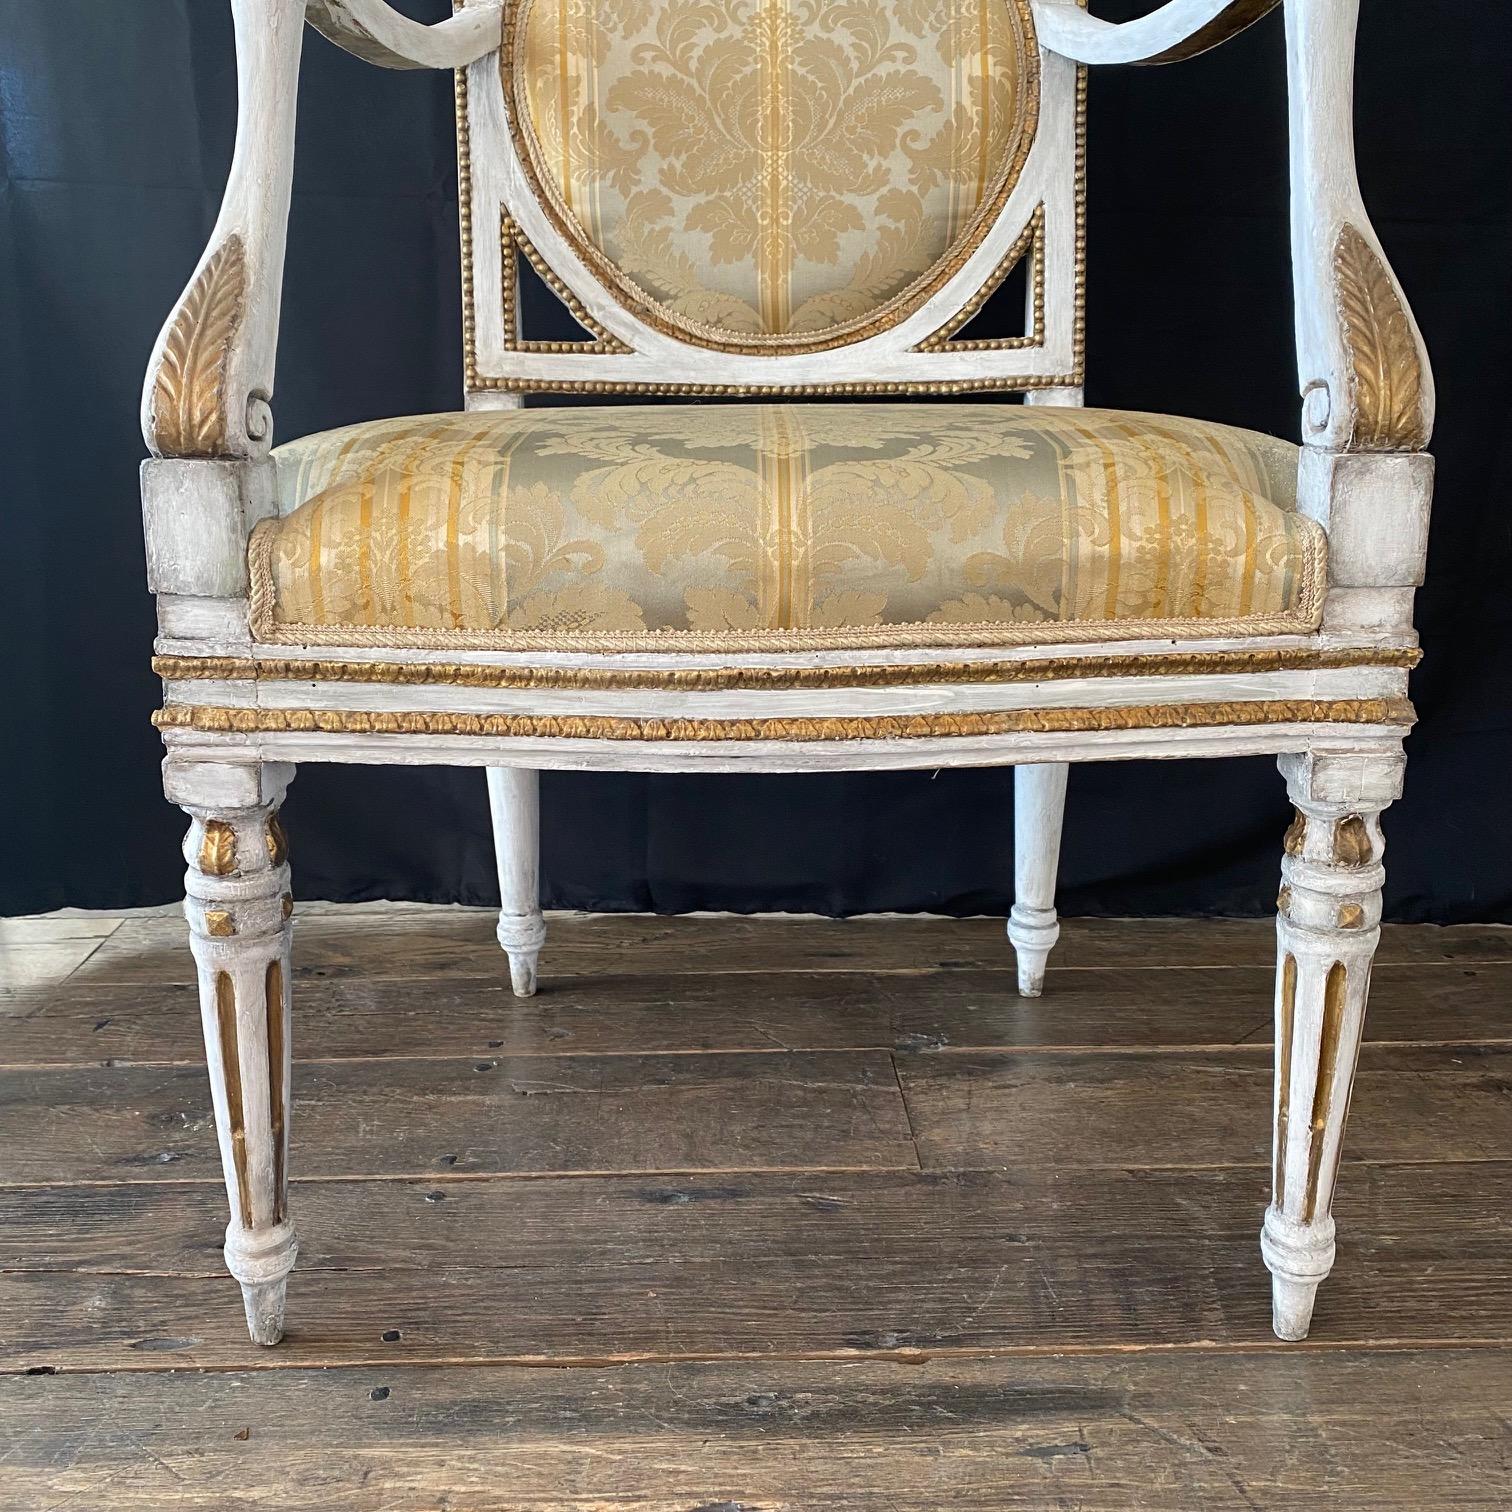 Elegant et classique 18ème siècle authentique néoclassique italien paire de fauteuils ou fauteuils d'un ensemble de salon (canapé assorti disponible). Tapissé d'une superbe soie brute neutre avec une peinture d'origine. En très bon état pour son âge